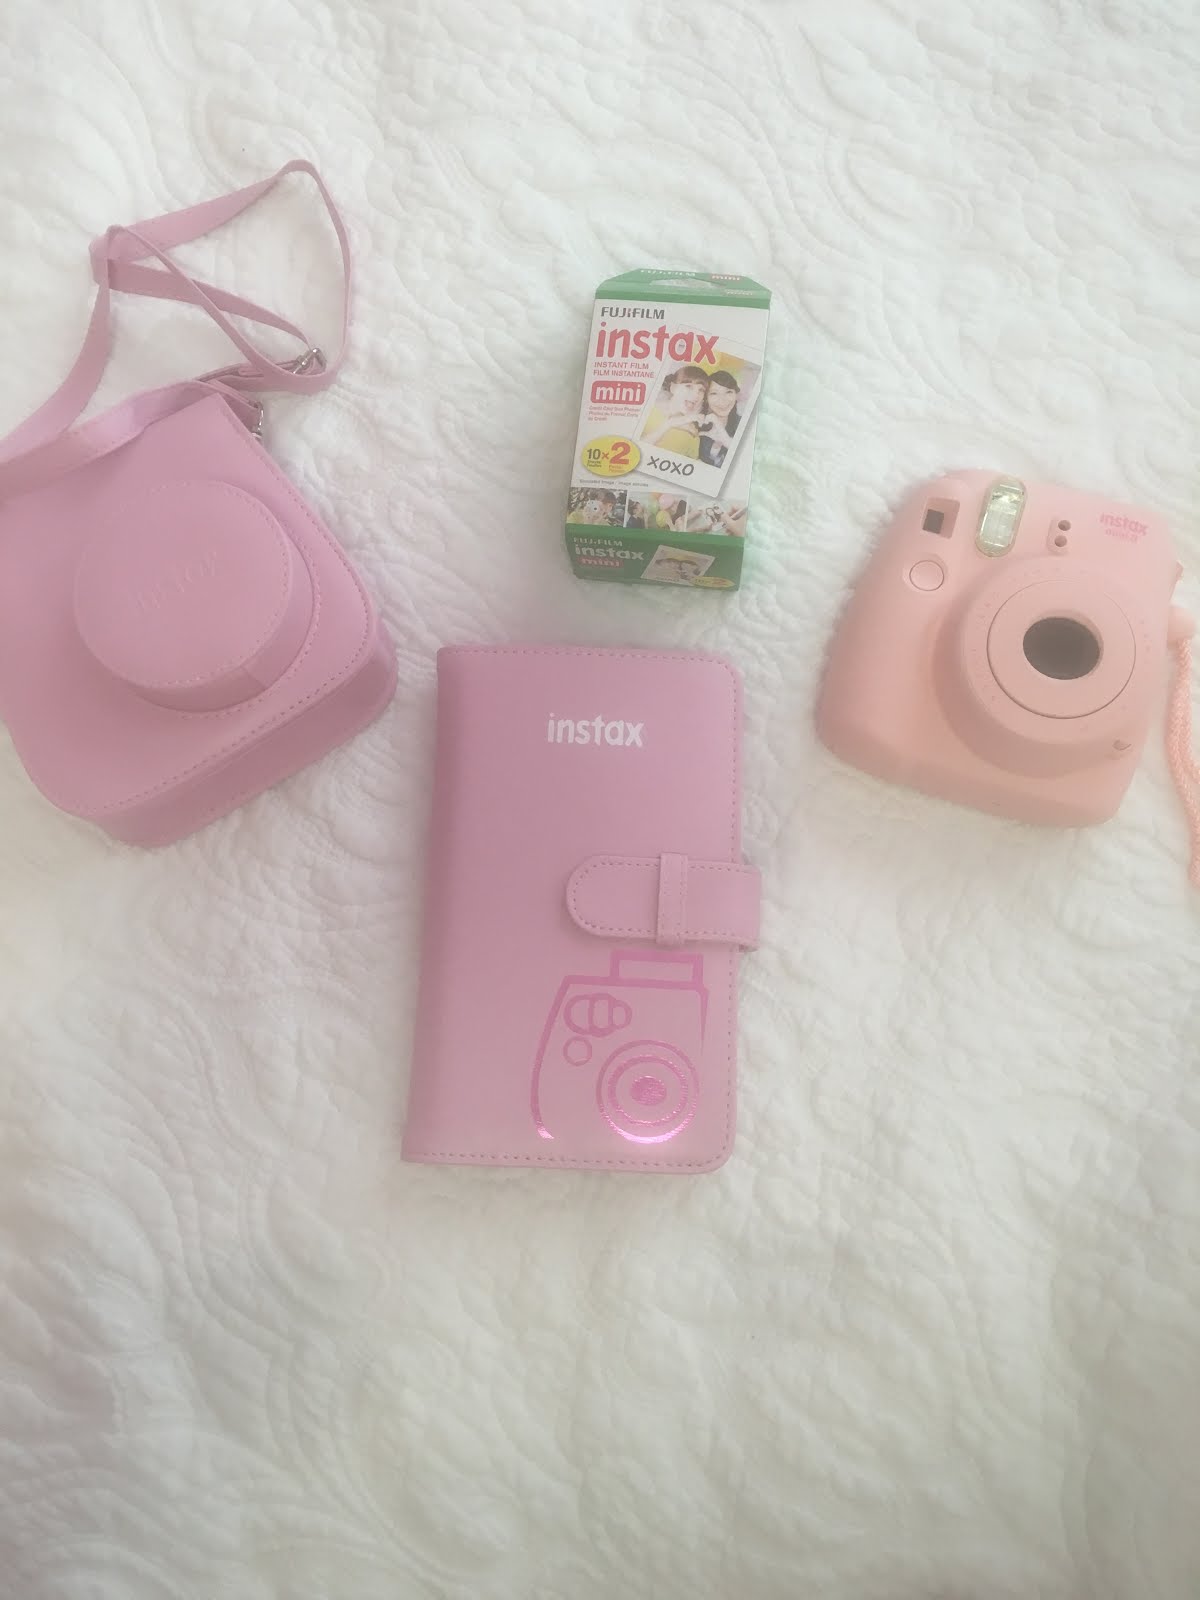 Fashionista93x: Pink Fujifilm (Instax mini 8)